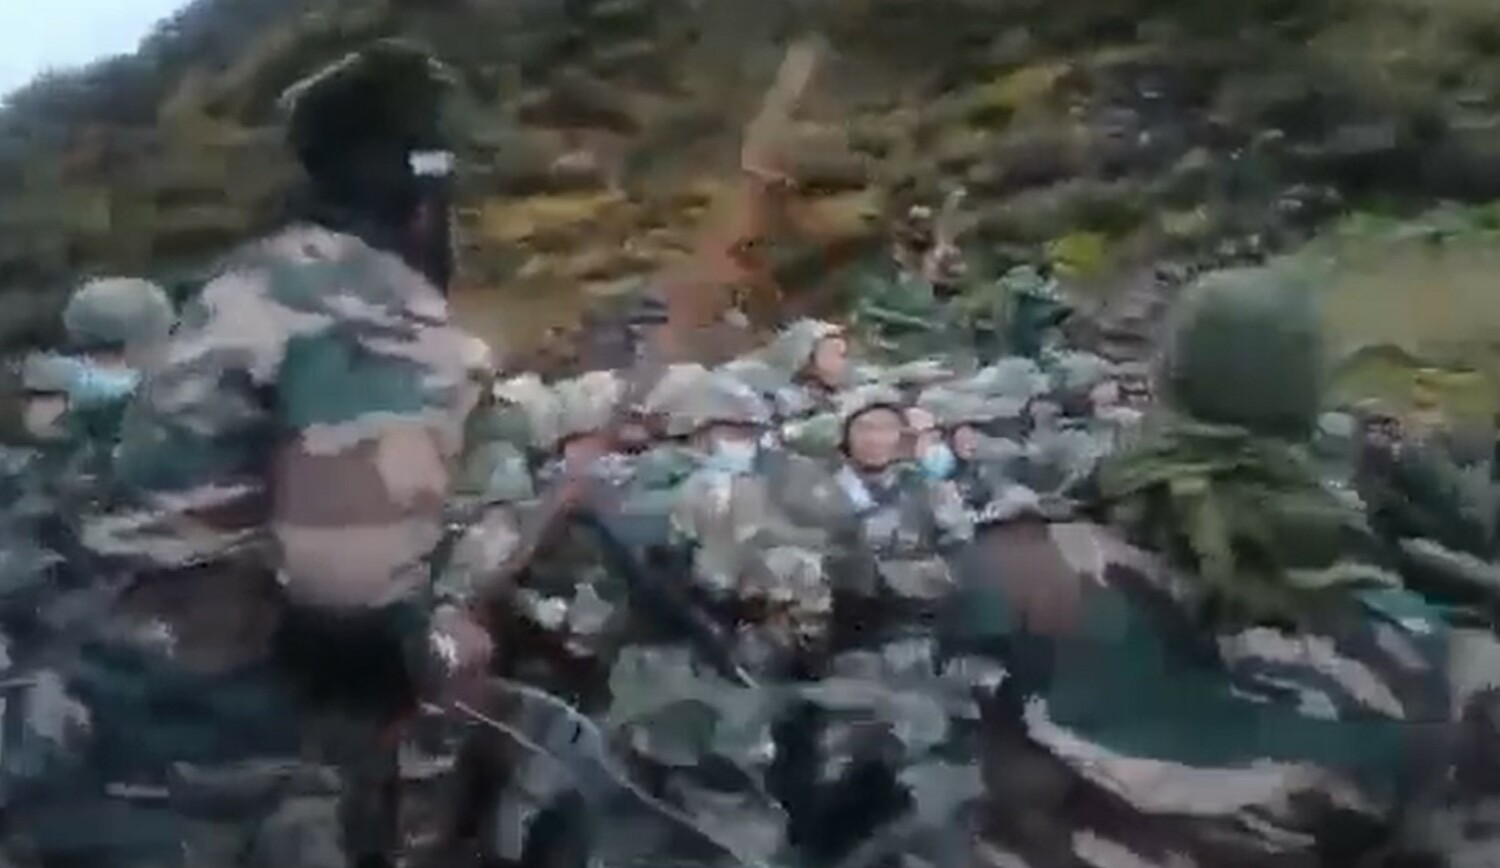  9 日中國與印度軍隊在兩國邊境發生衝突。網傳影片顯示，印度軍隊手持棍棒向越過邊境線的中共解放軍不斷揮舞。   圖:翻攝自推特 The Analyzer @Indian_Analyzer